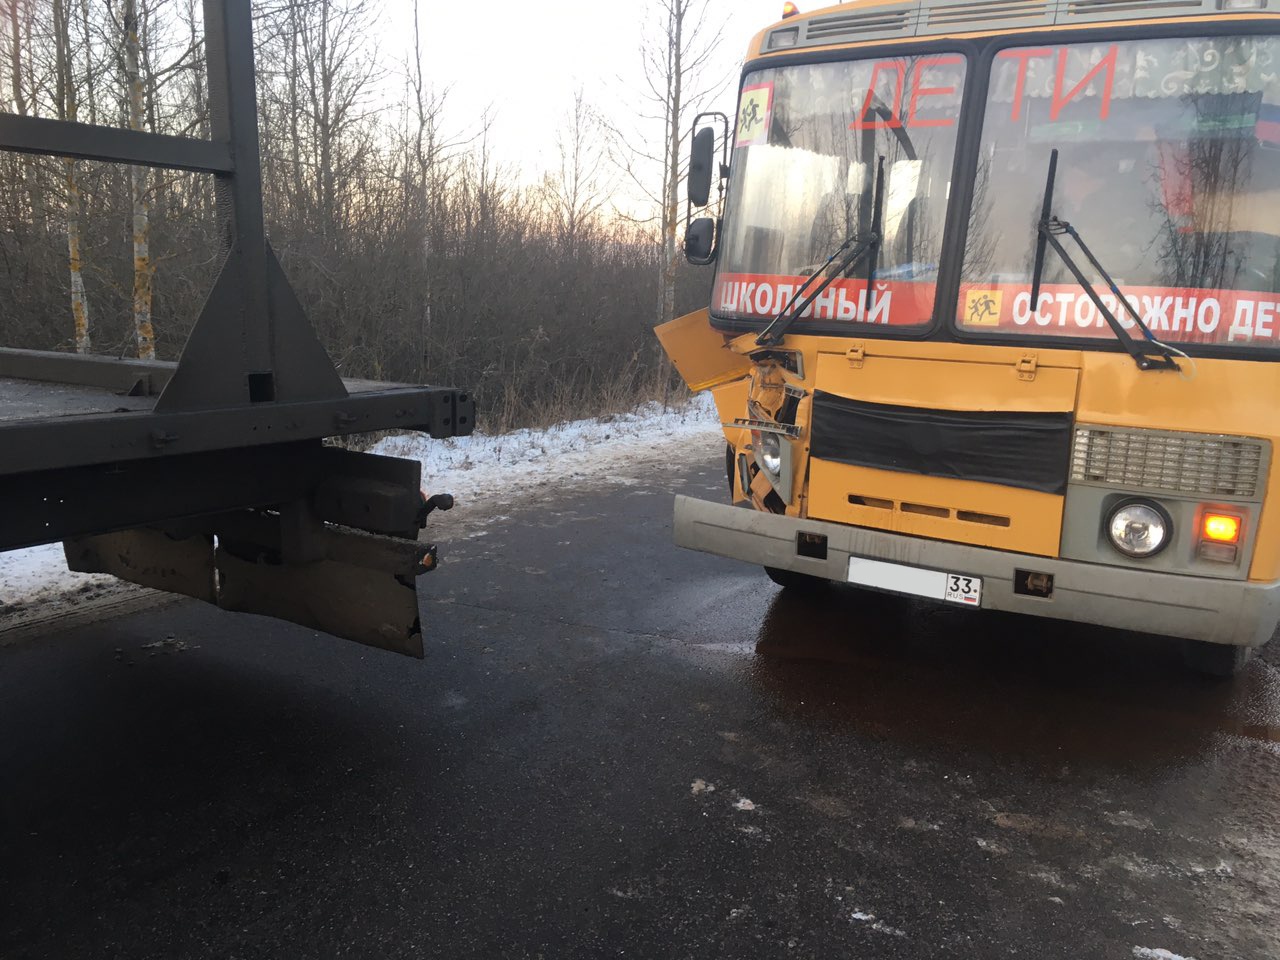 Во Владимирской области школьный автобус попал в ДТП. Есть пострадавшие